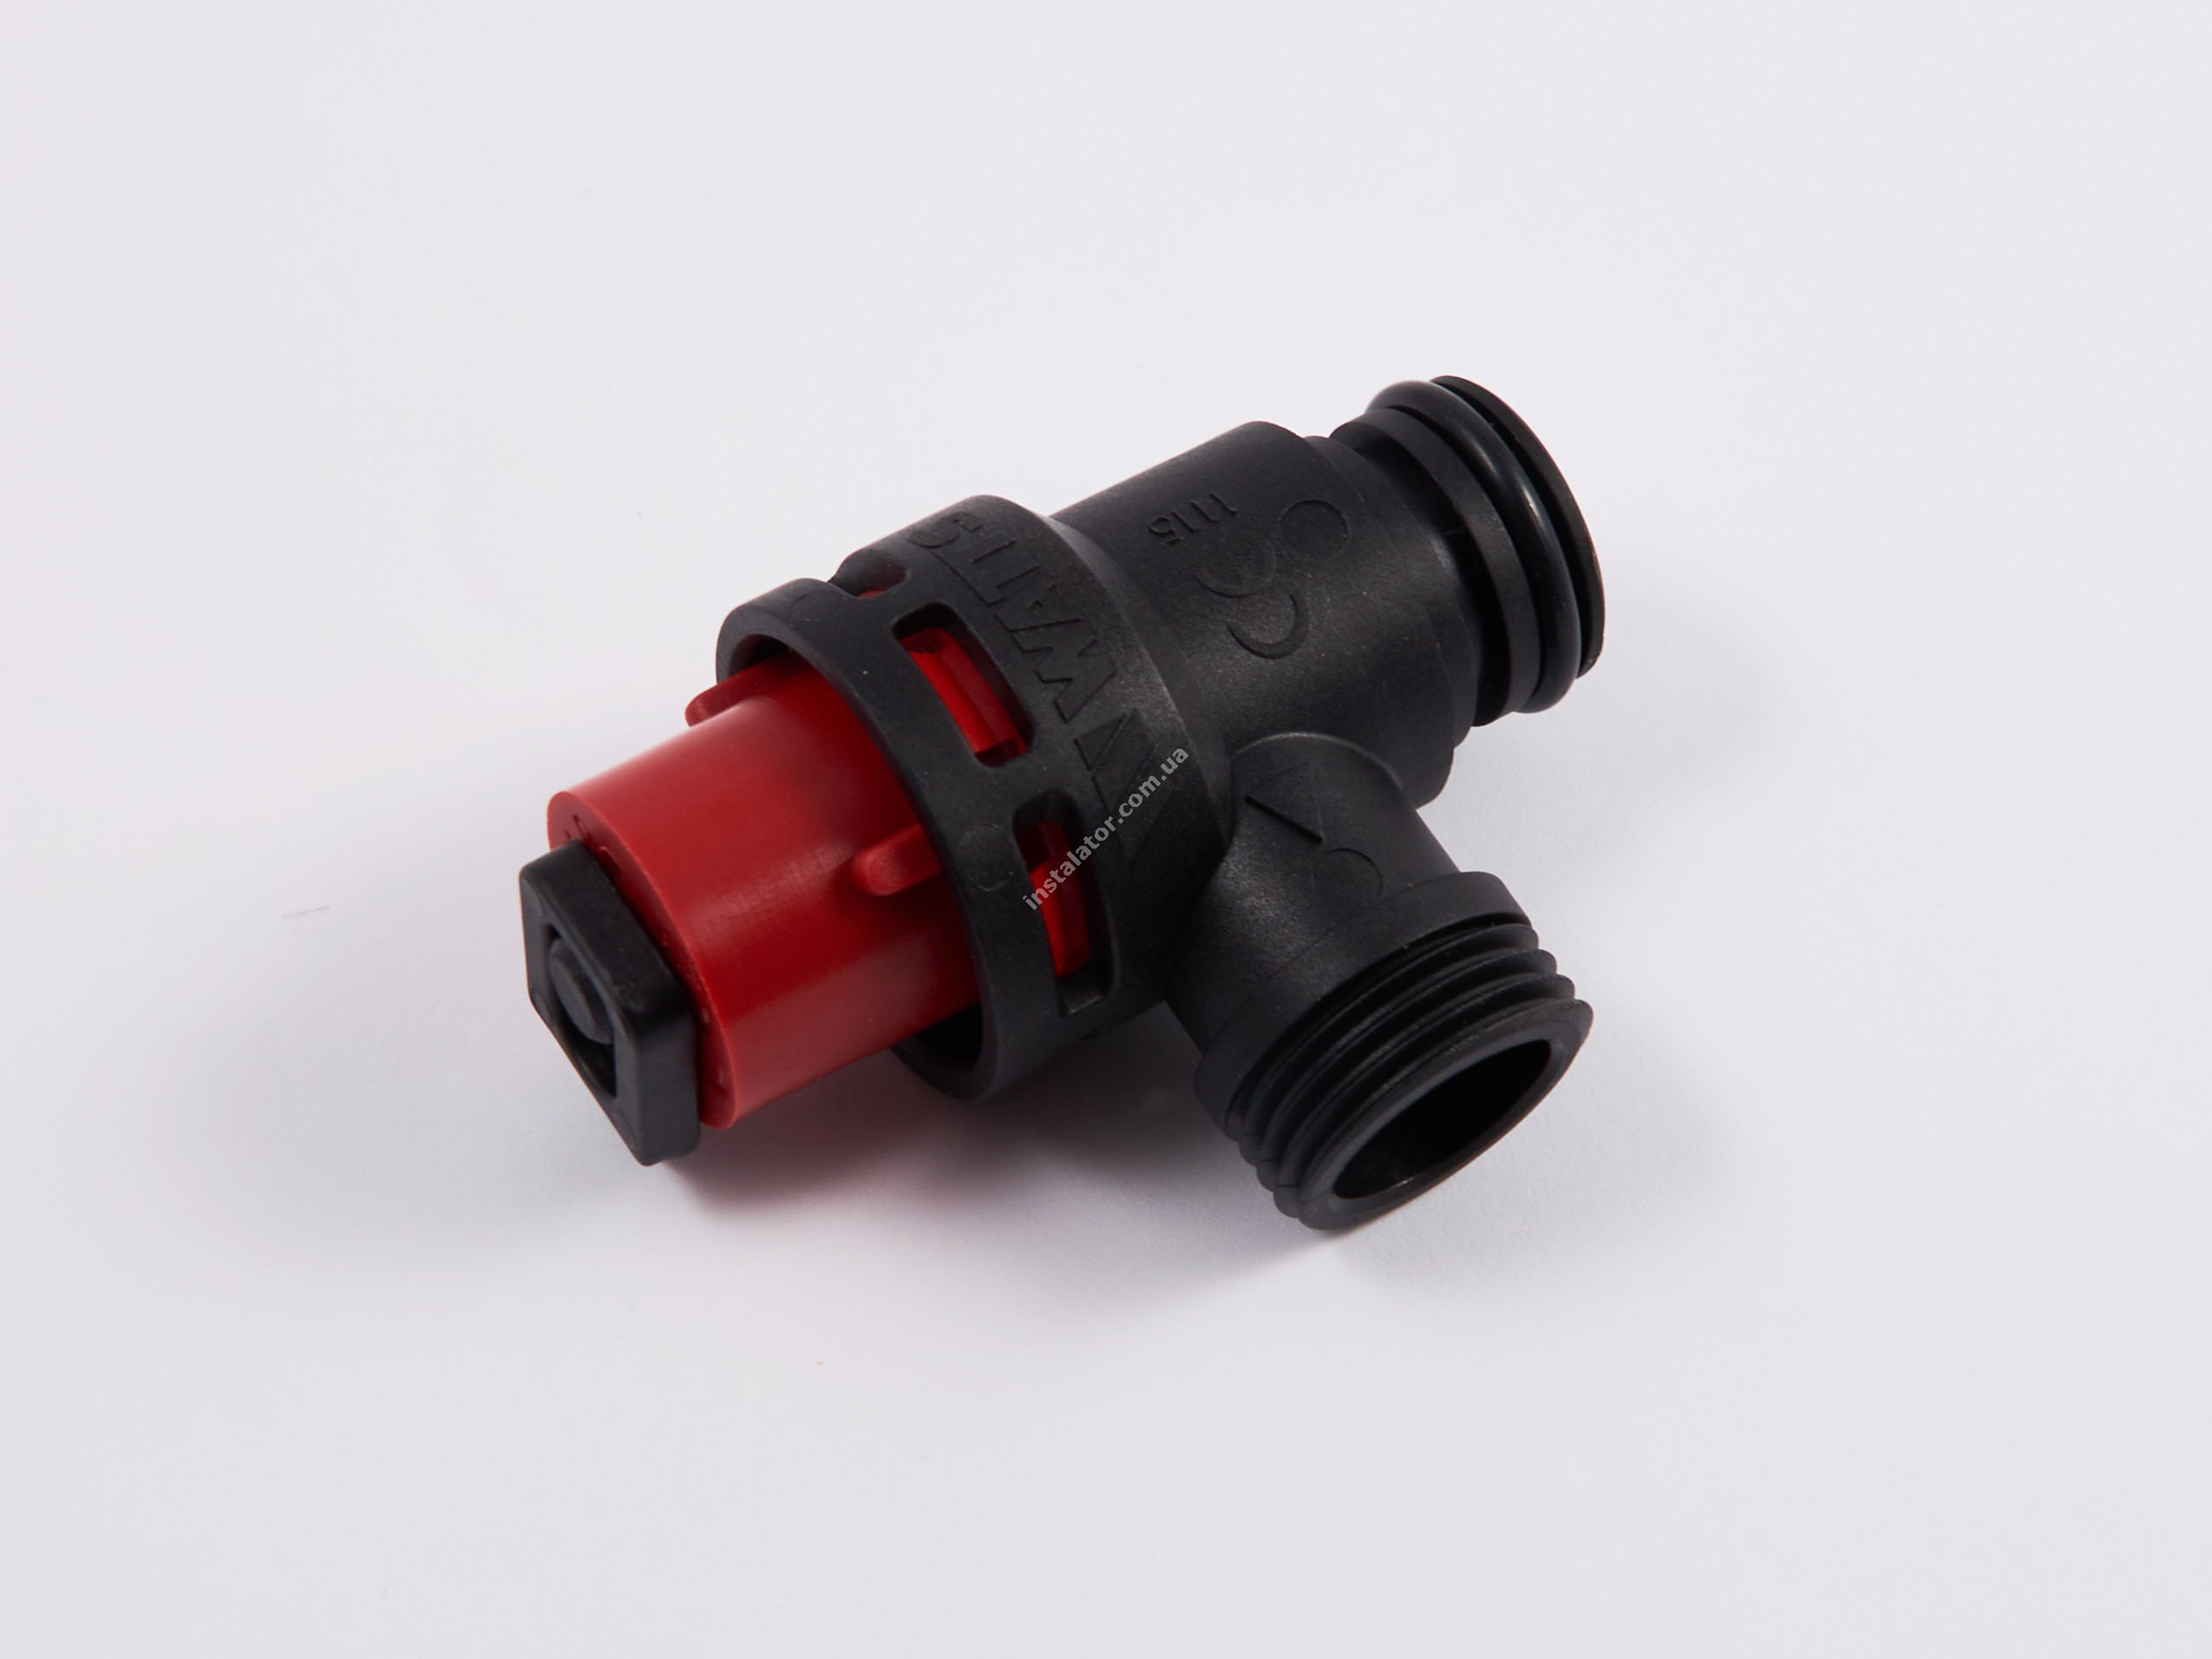 BI1441101 Запобіжний клапан універсальний (пластик) Viessmann/Biasi/Ferroli